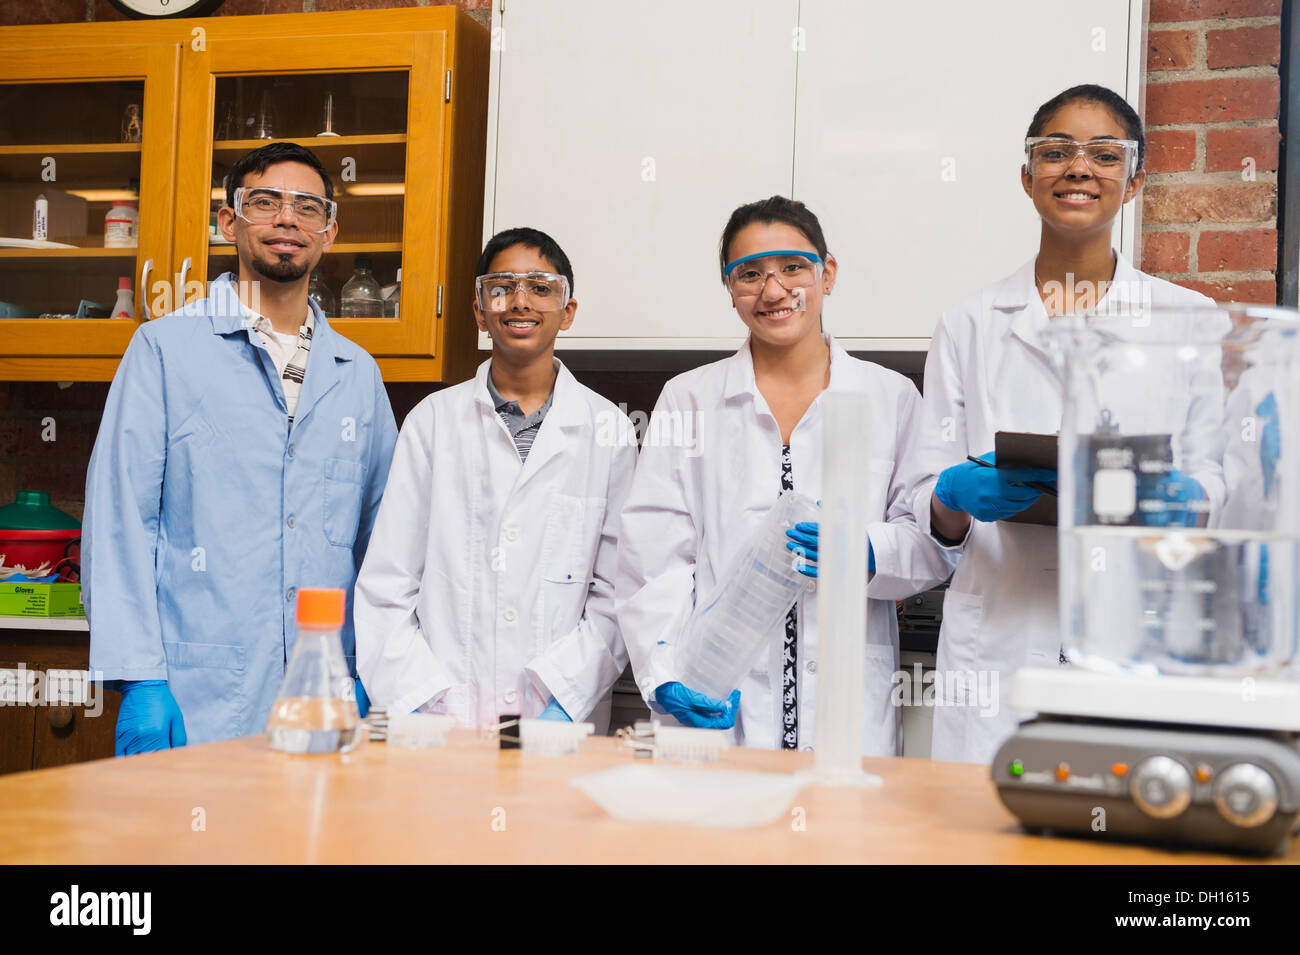 Enseignant et élèves smiling in science lab Banque D'Images